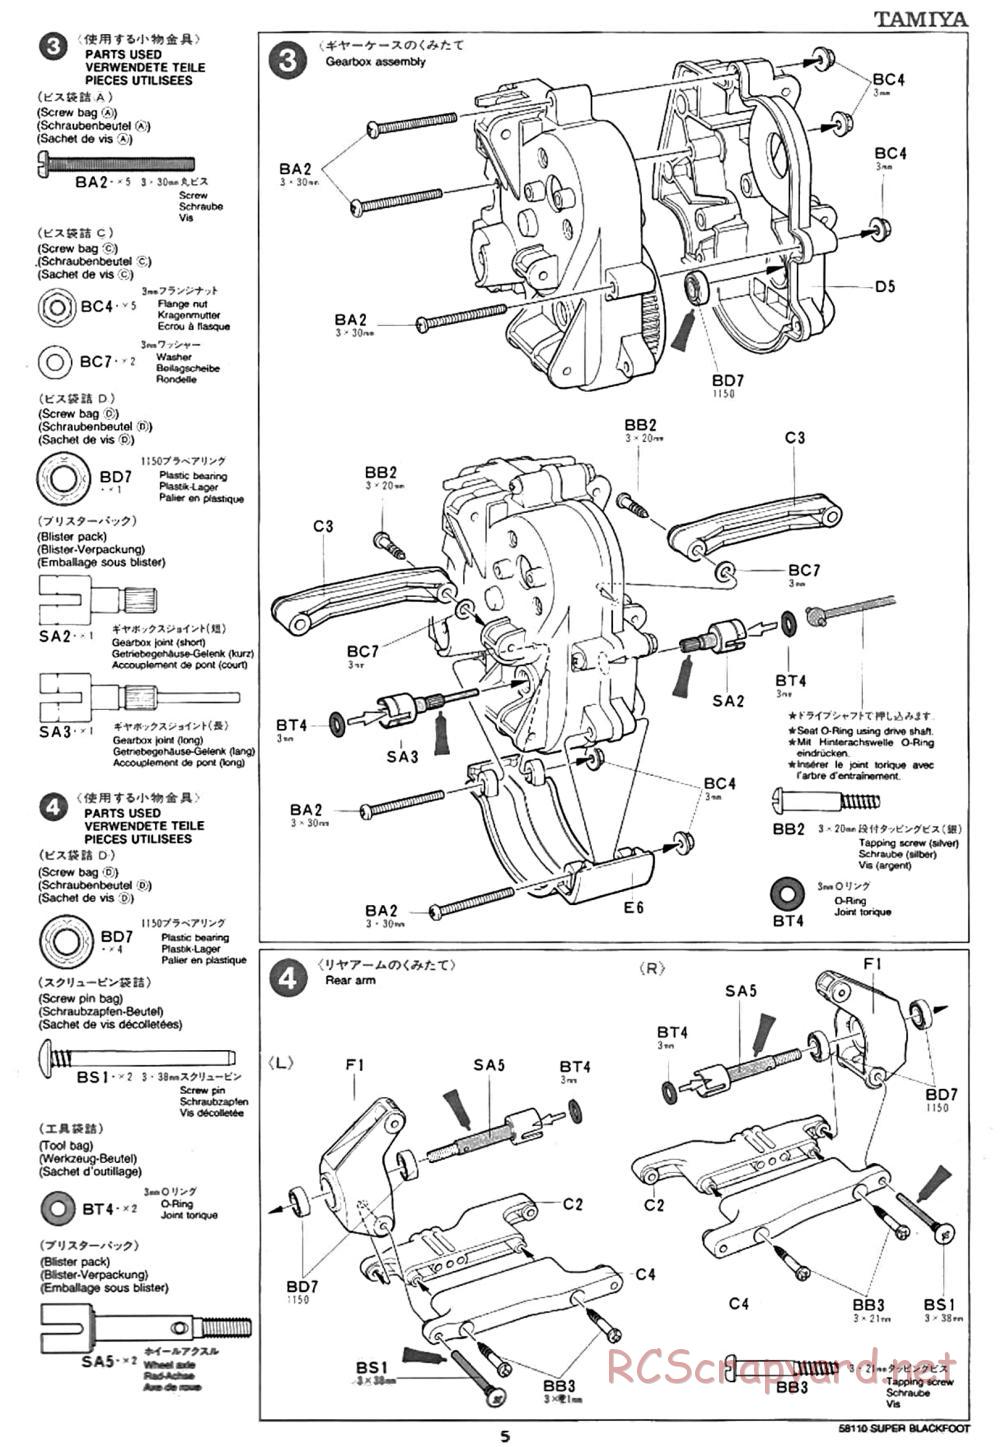 Tamiya - Super Blackfoot Chassis - Manual - Page 5